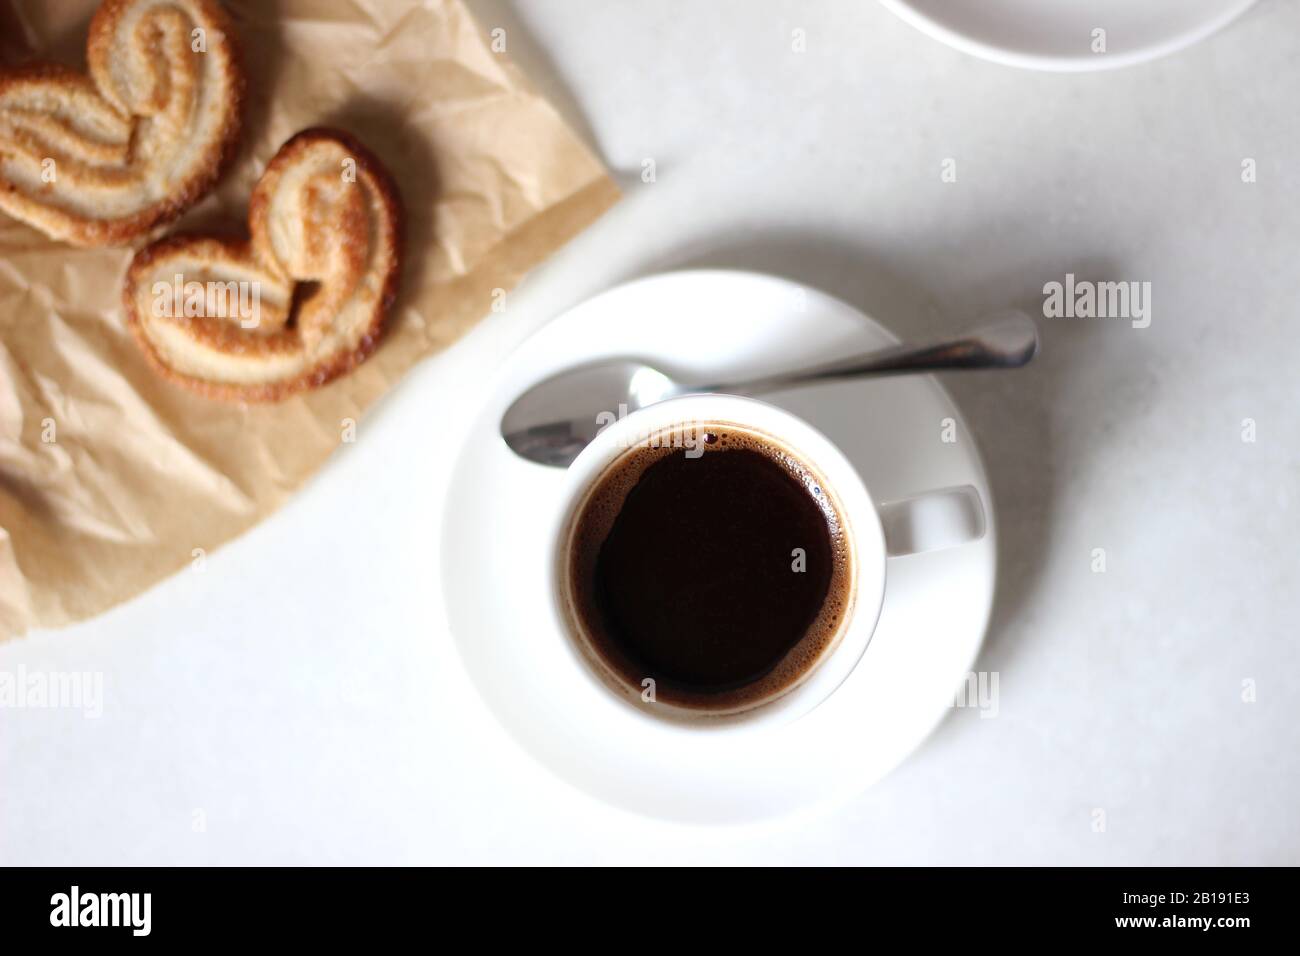 Frühstück mit Plätzchen und Kaffee von Palmiers. Köstliche Elephant Ears Cookies. Stockfoto